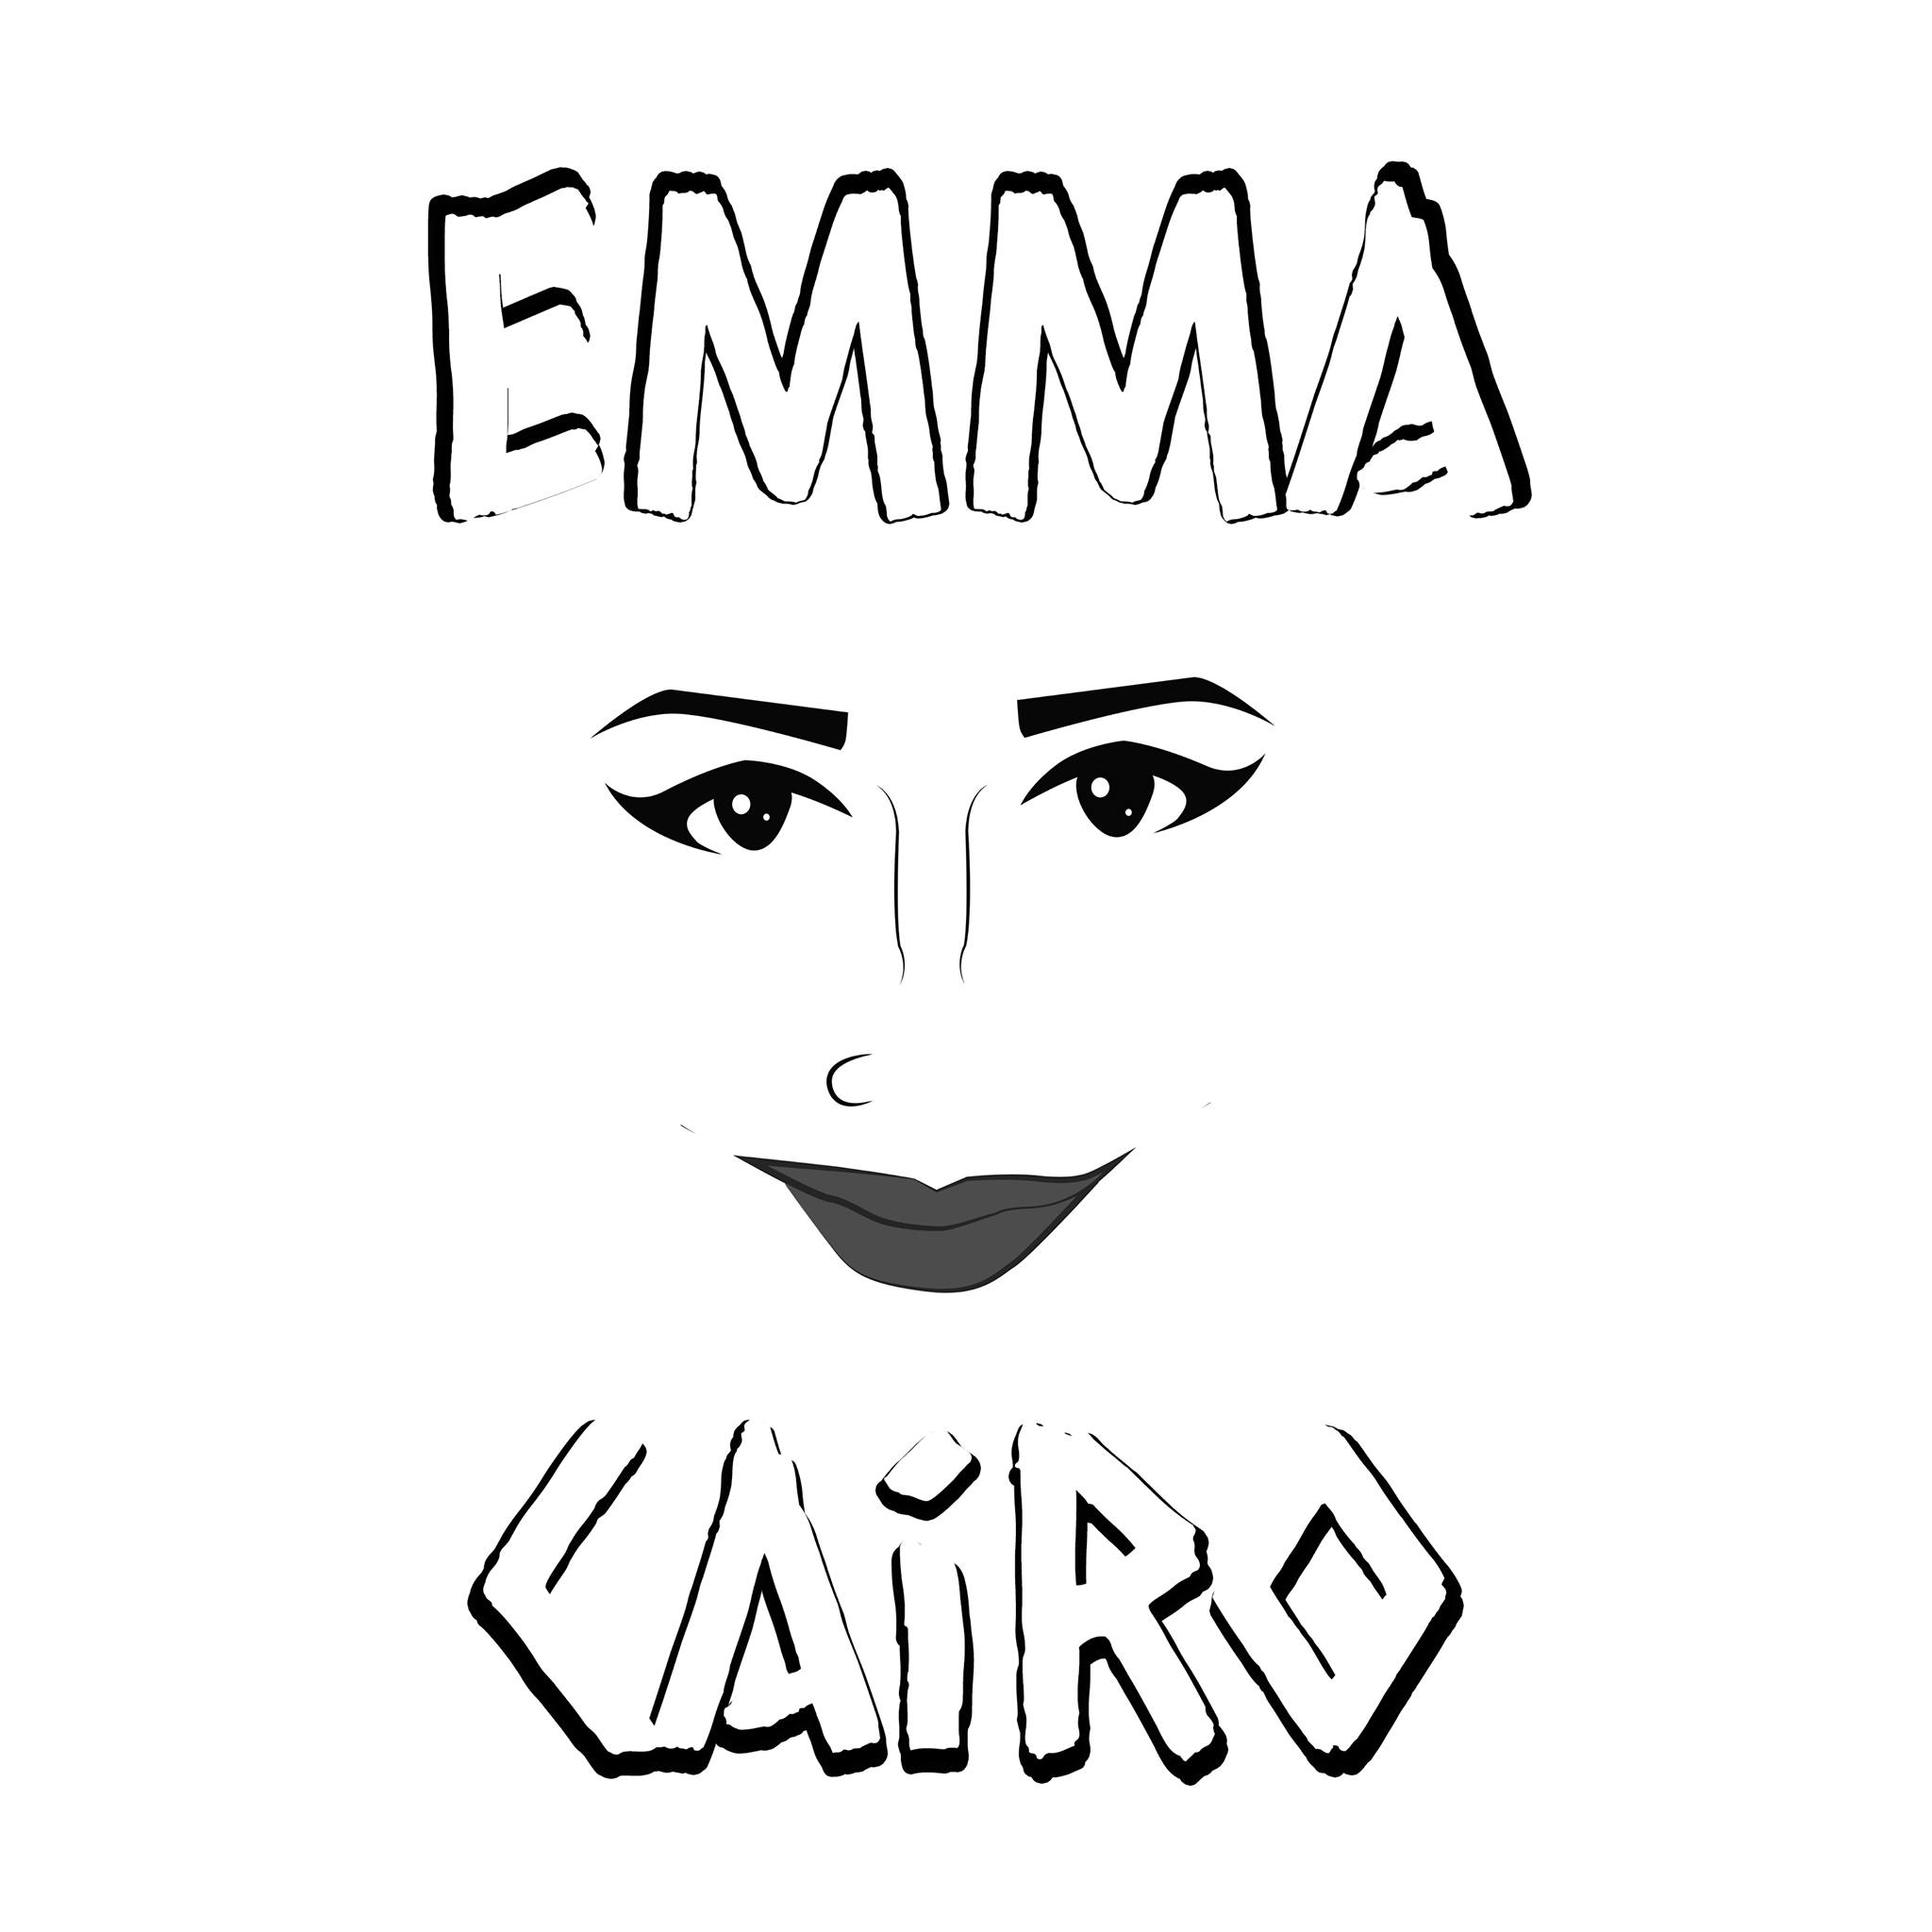 Emma Cairo